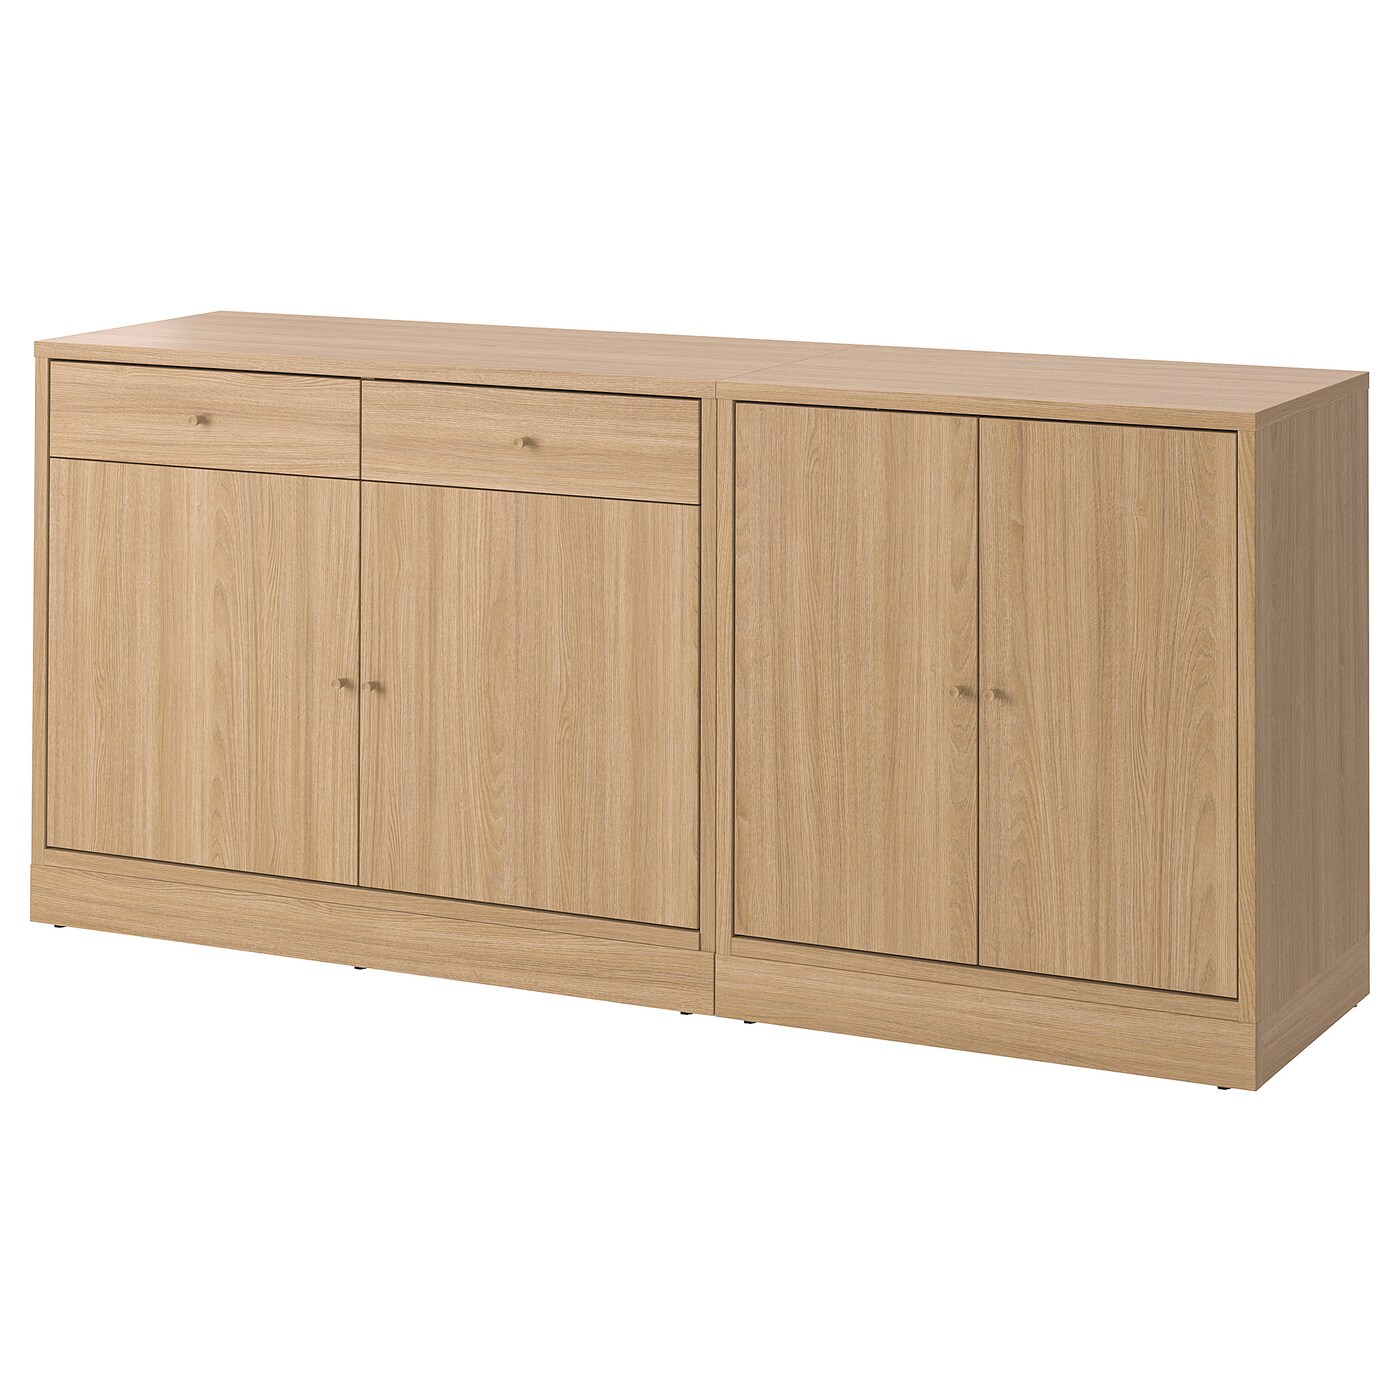 Книжный шкаф - TONSTAD IKEA/  ТОНСТАД  ИКЕА,  202х90 см, коричневый